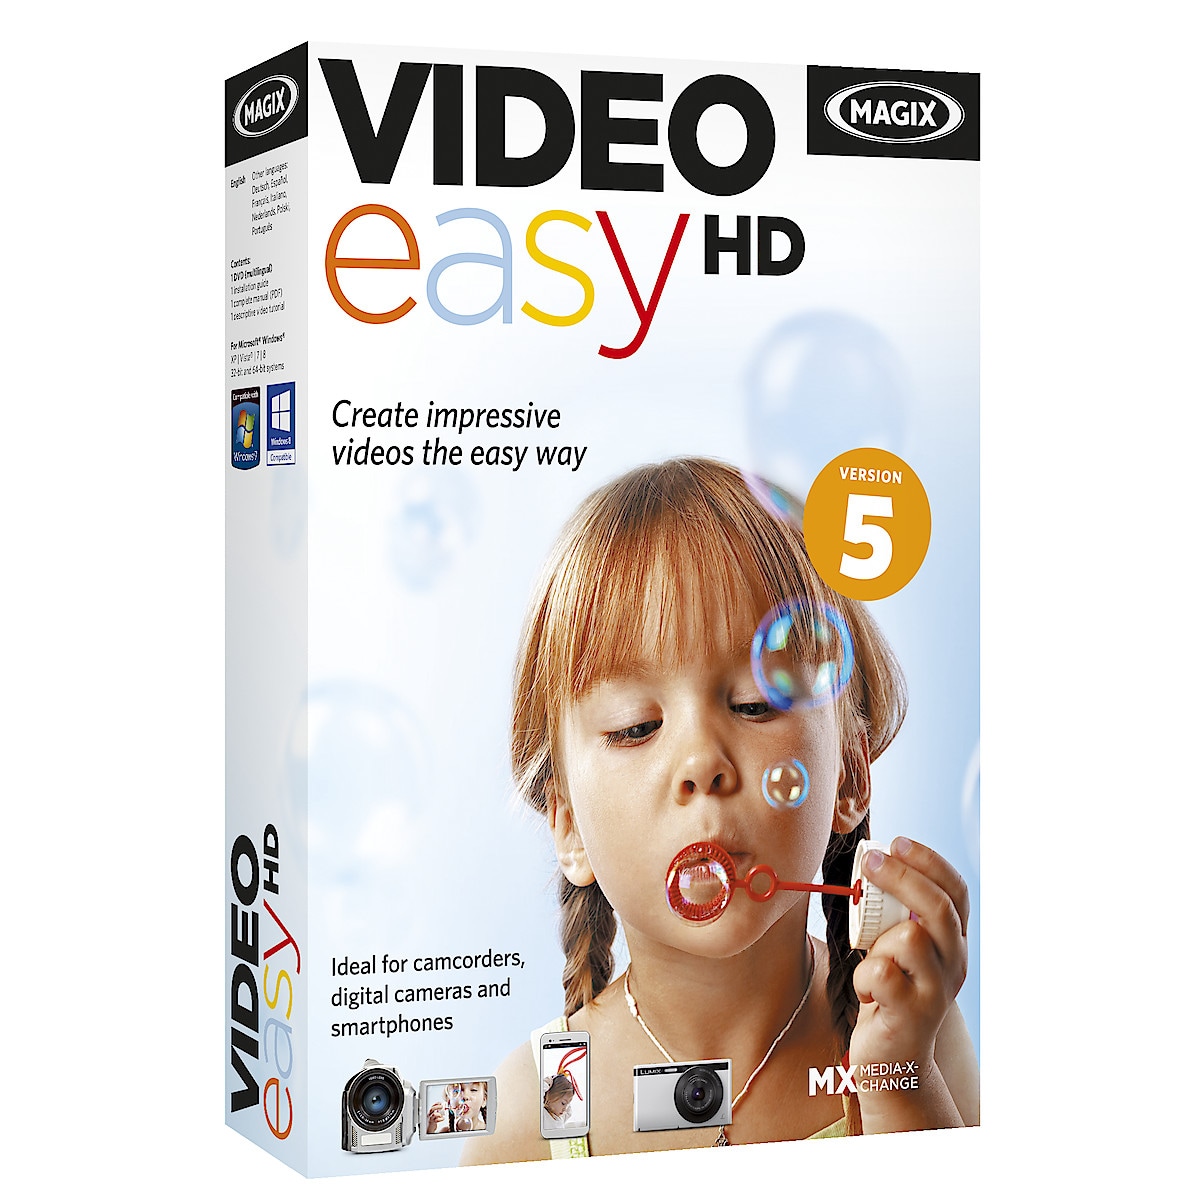 Video Easy HD Magix